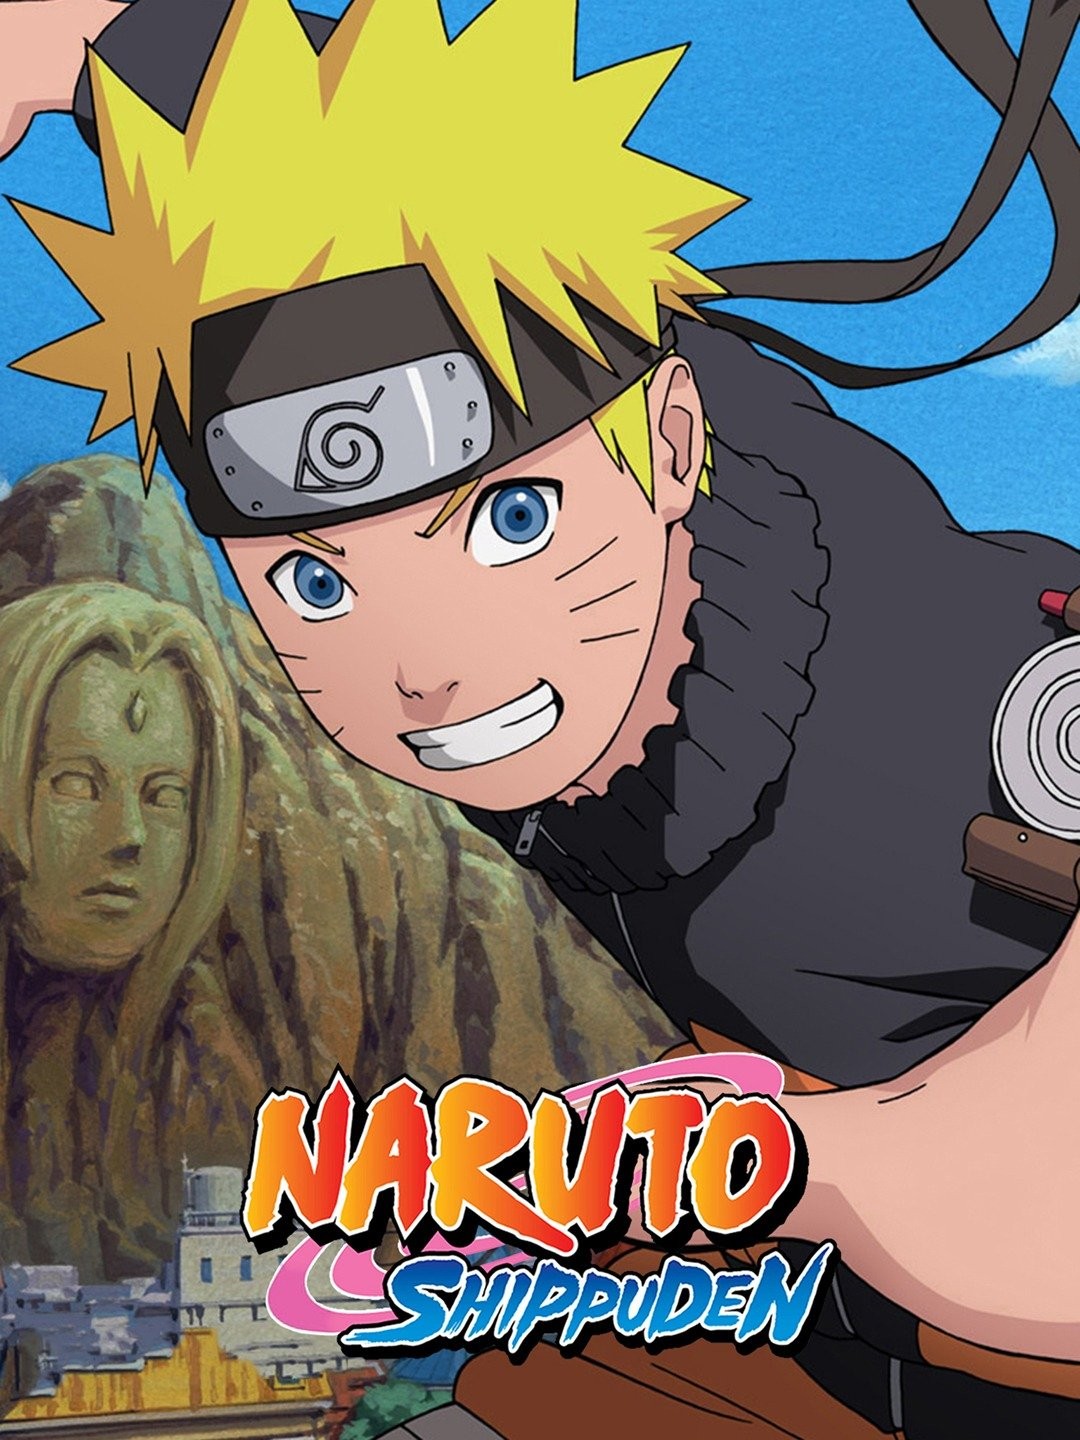 silver moon [Video] [Video]  Naruto, Naruto vs, Naruto shippuden